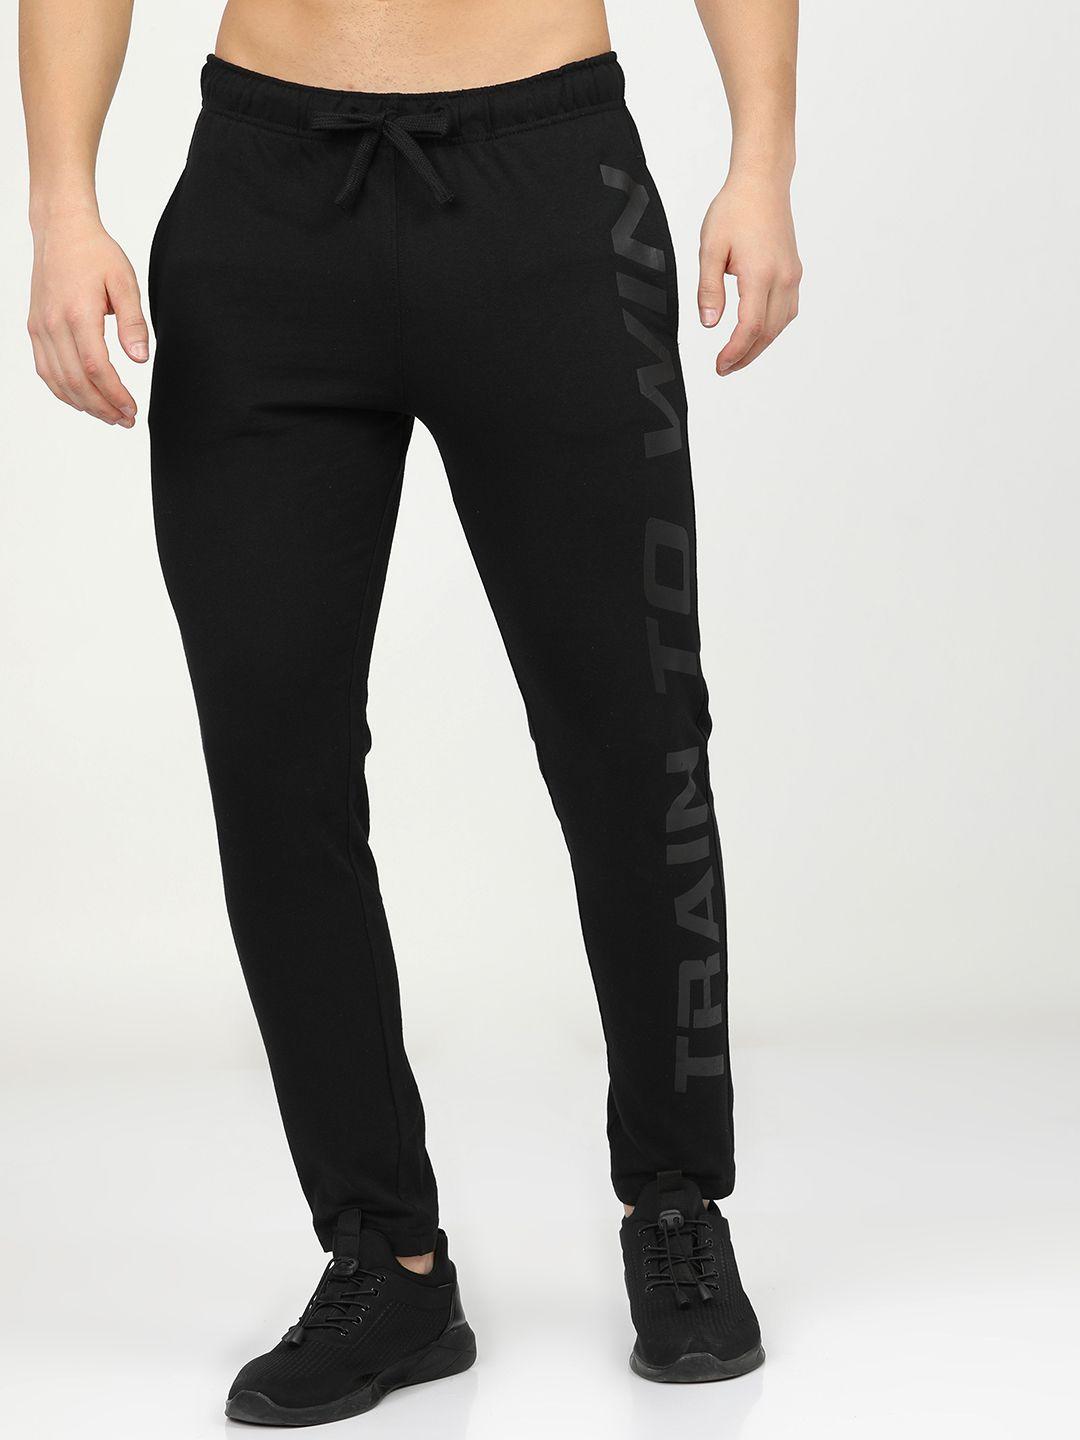 highlander-men-black-solid-slim-fit-track-pants